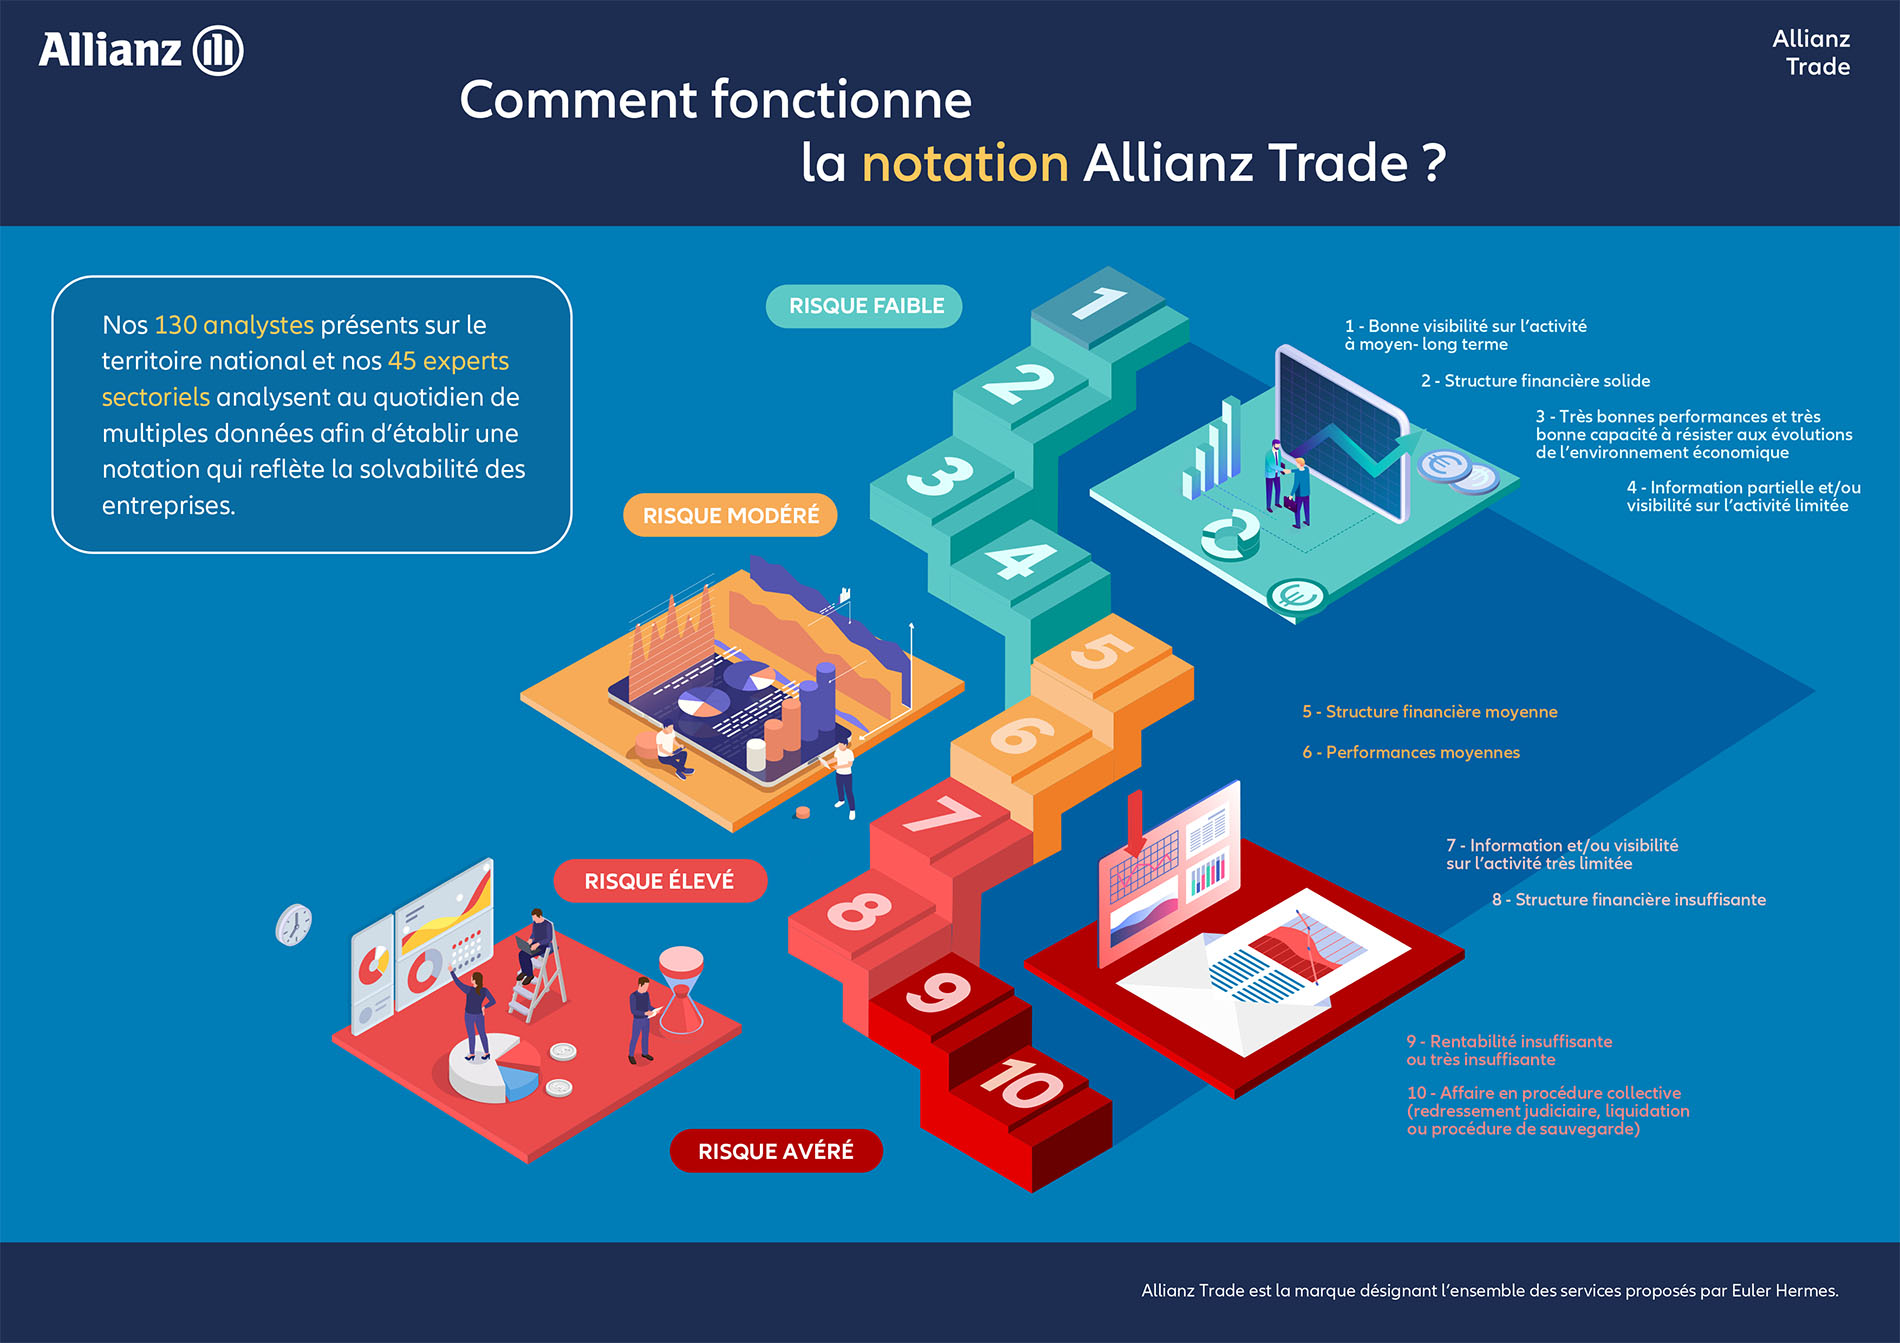 Notation Allianz Trade